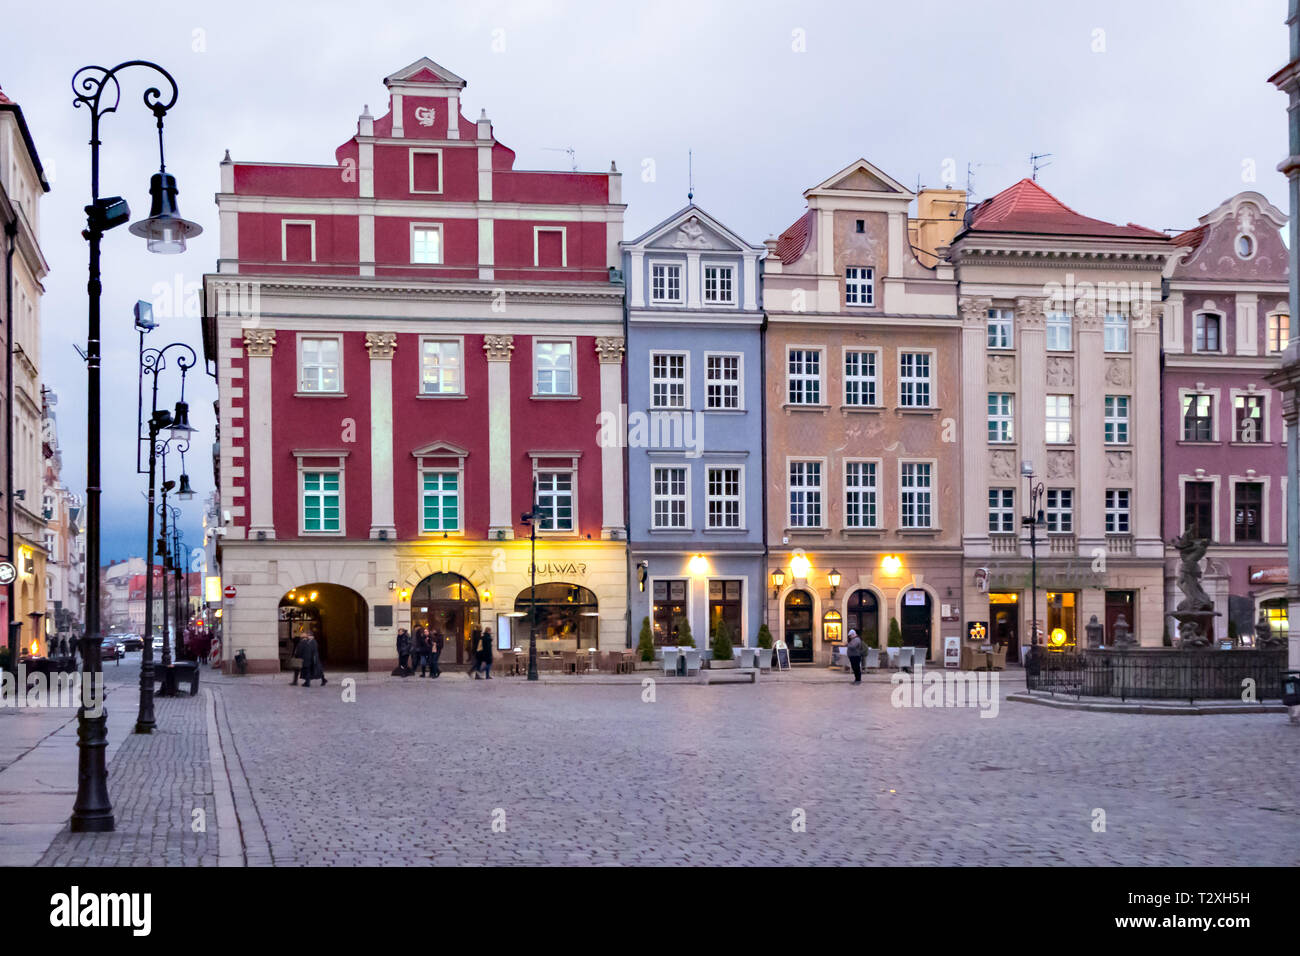 Am Abend wenig Licht nächtliche Dämmerung in der Altstadt Platz in der polnischen Stadt Poznan Polen mit seinem bunten Häuser Restaurants und Cafes Stockfoto